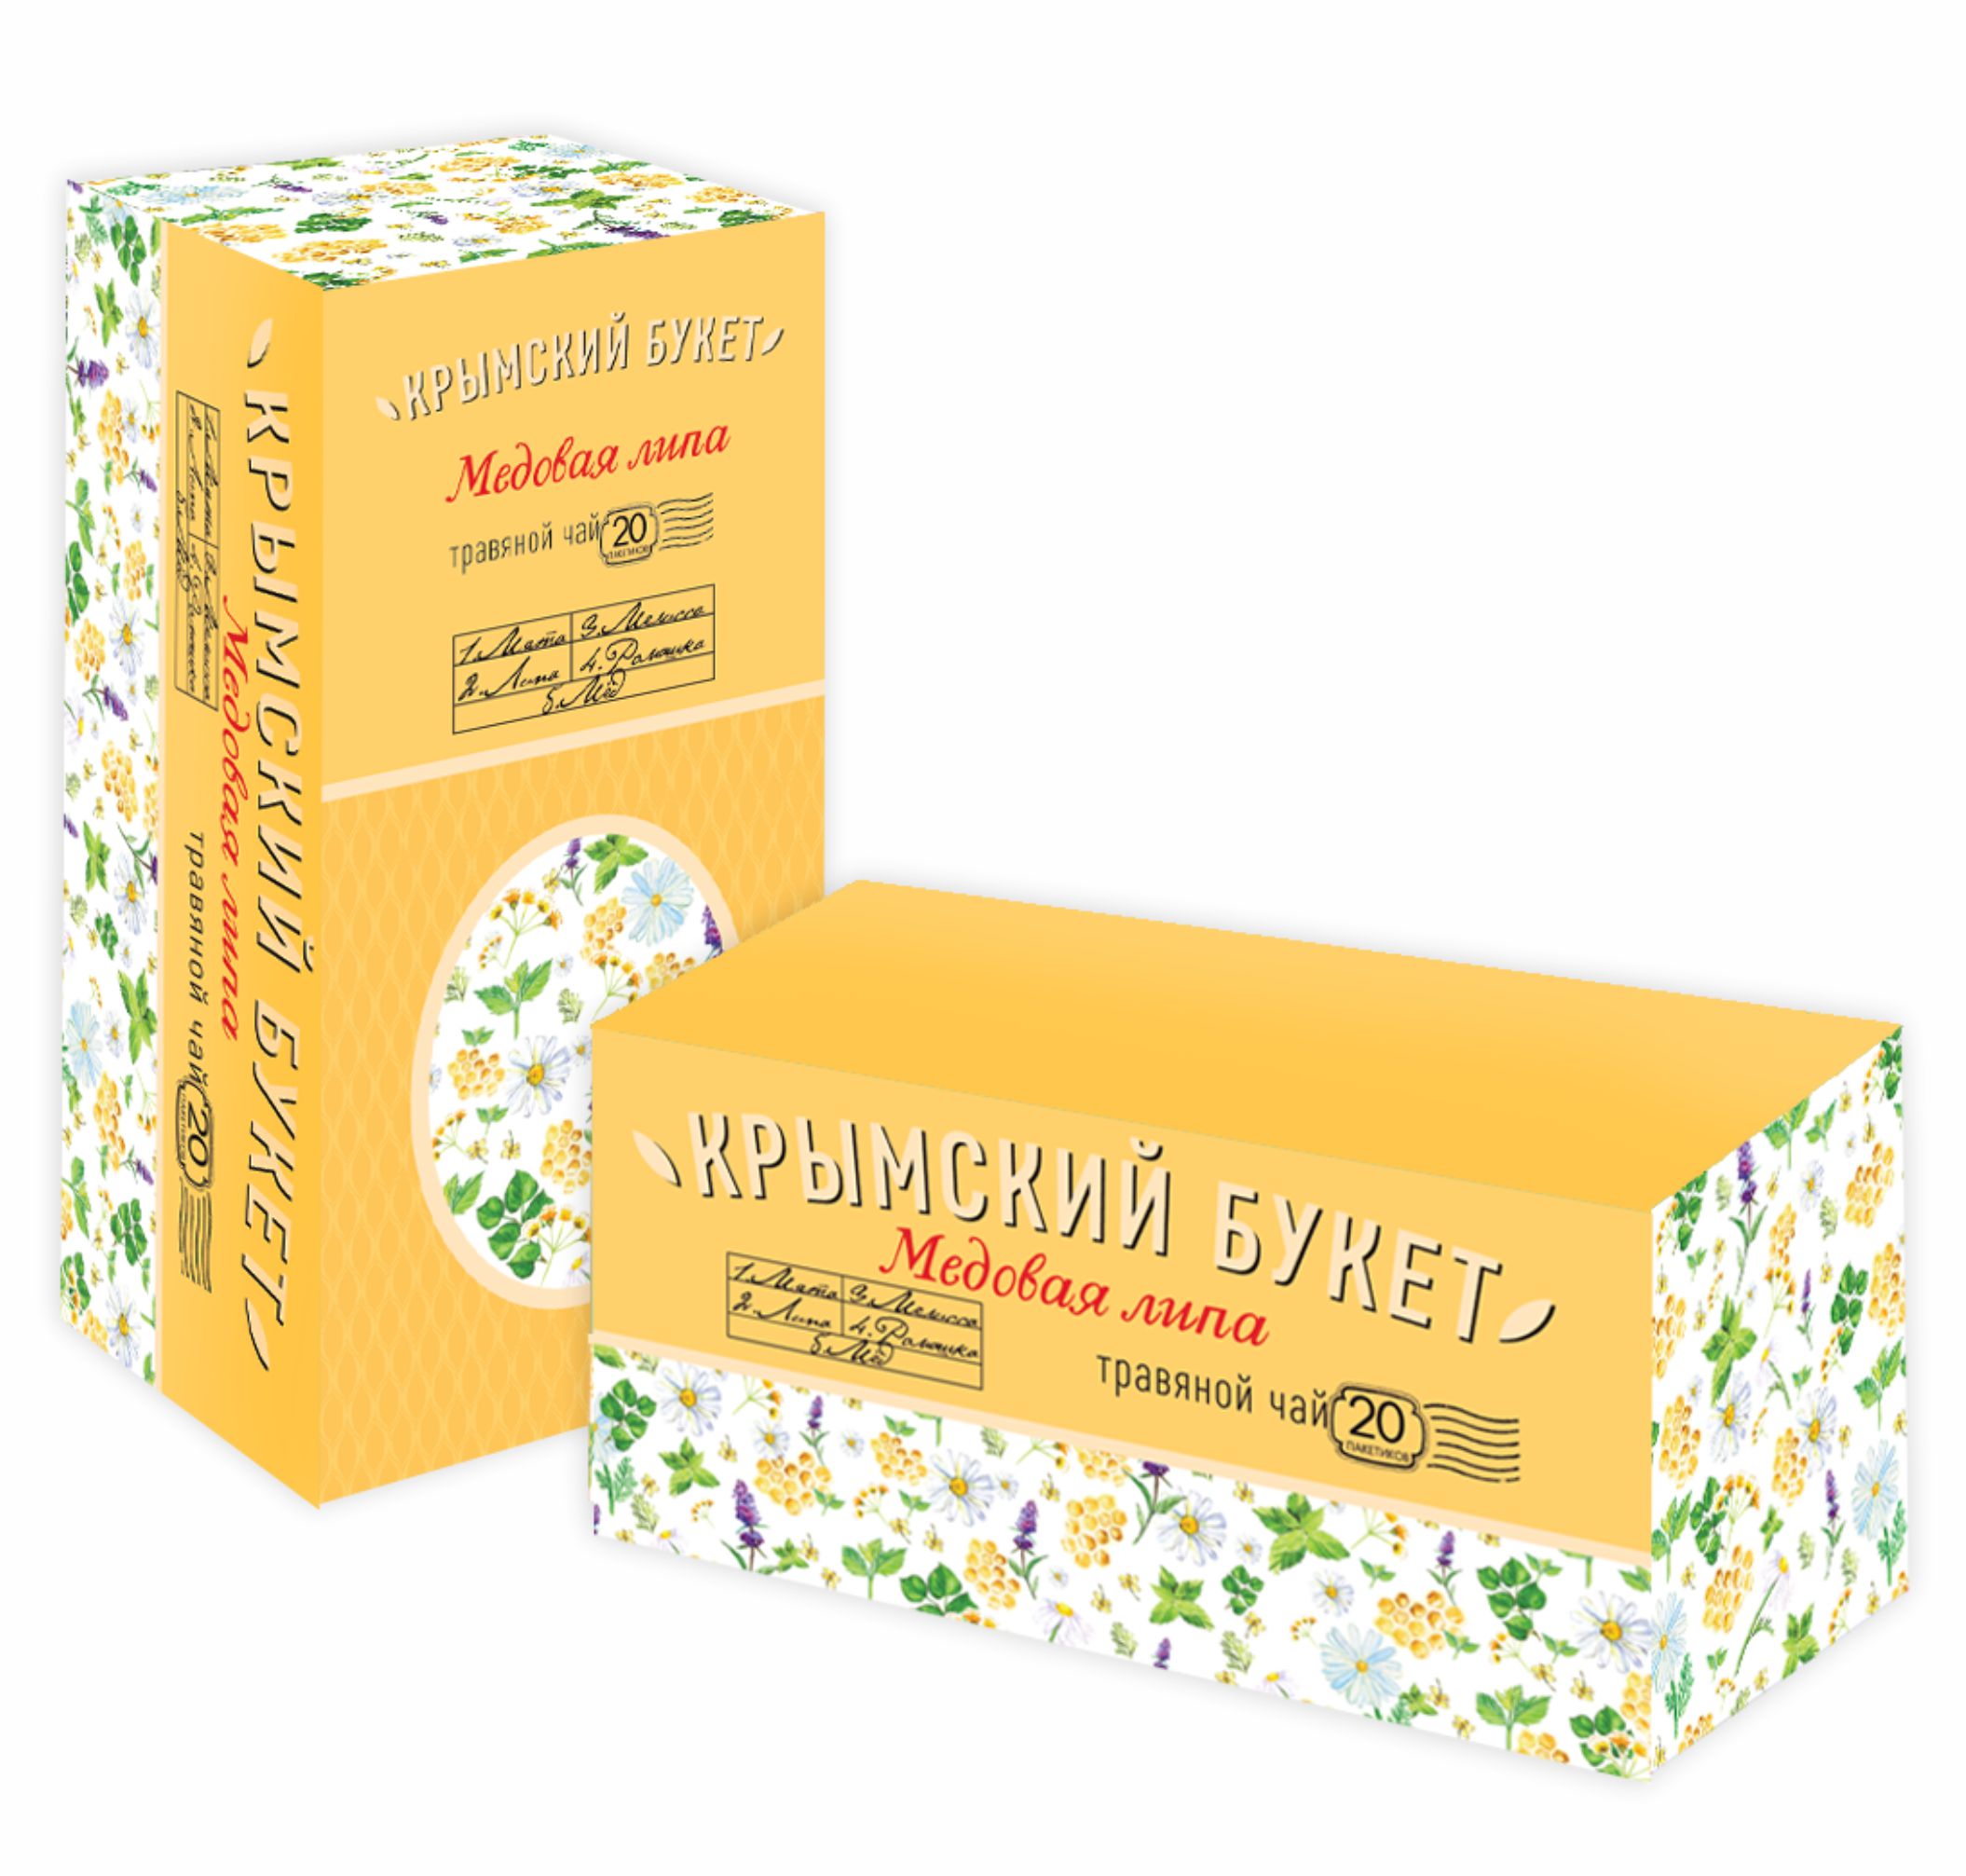 Травяной чай Крымский букет Медовая липа в пакетиках 1,5 г х 20 шт